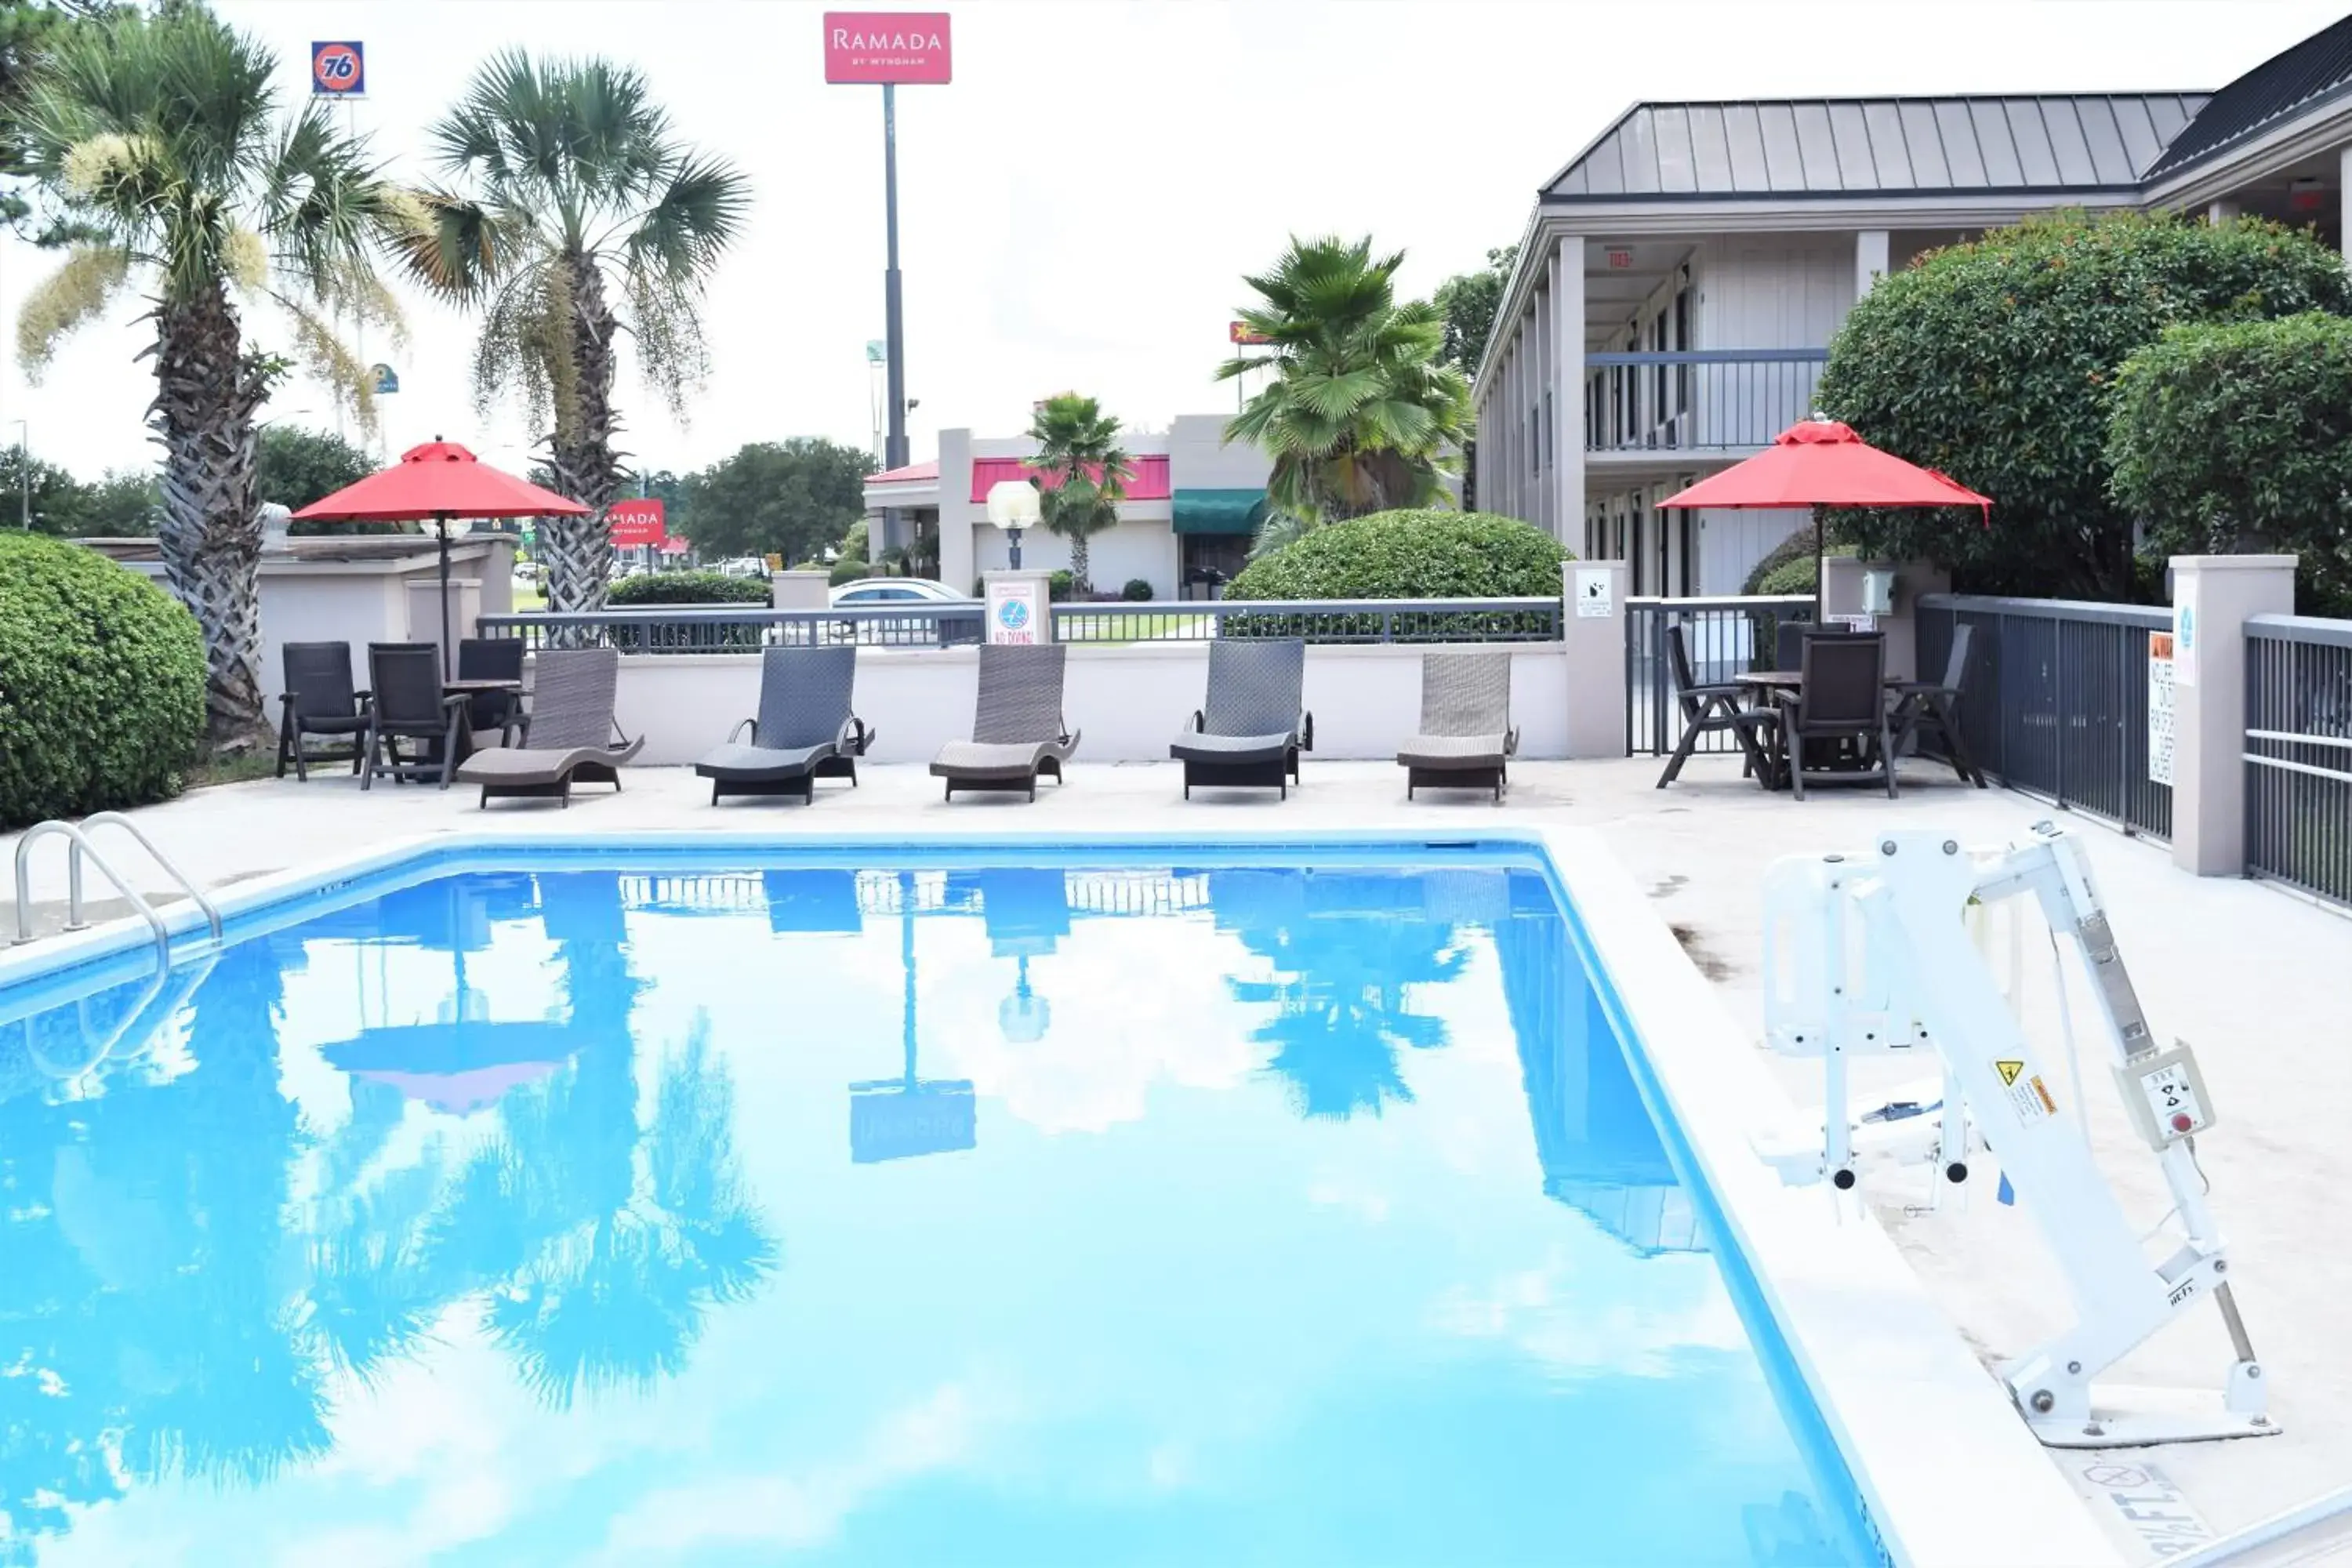 Swimming pool in Ramada by Wyndham Savannah Gateway